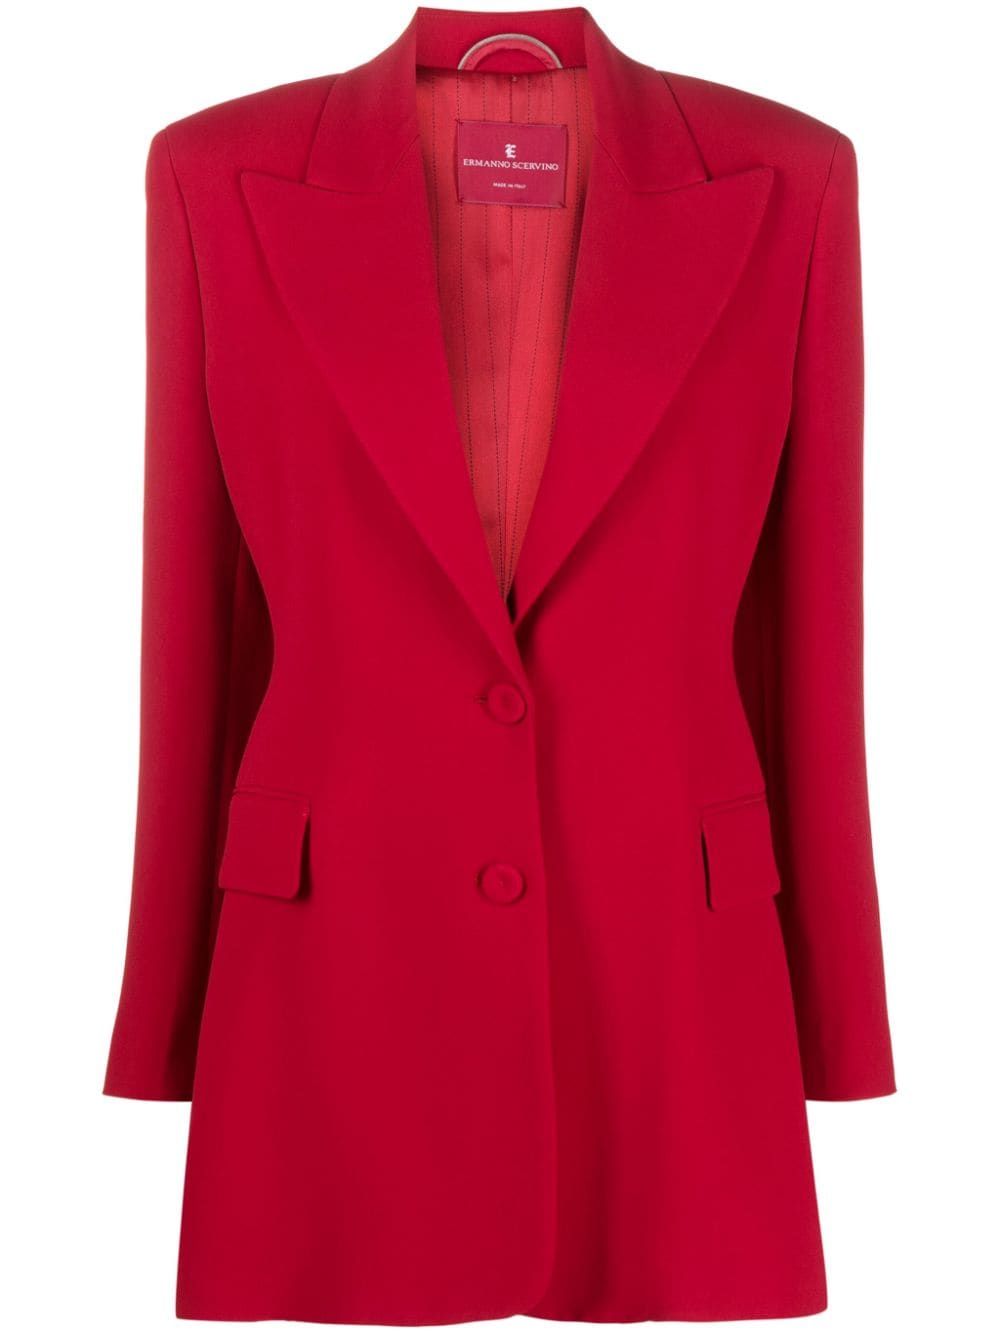 Women's FW23 Jacket in Elegant 91557 Color